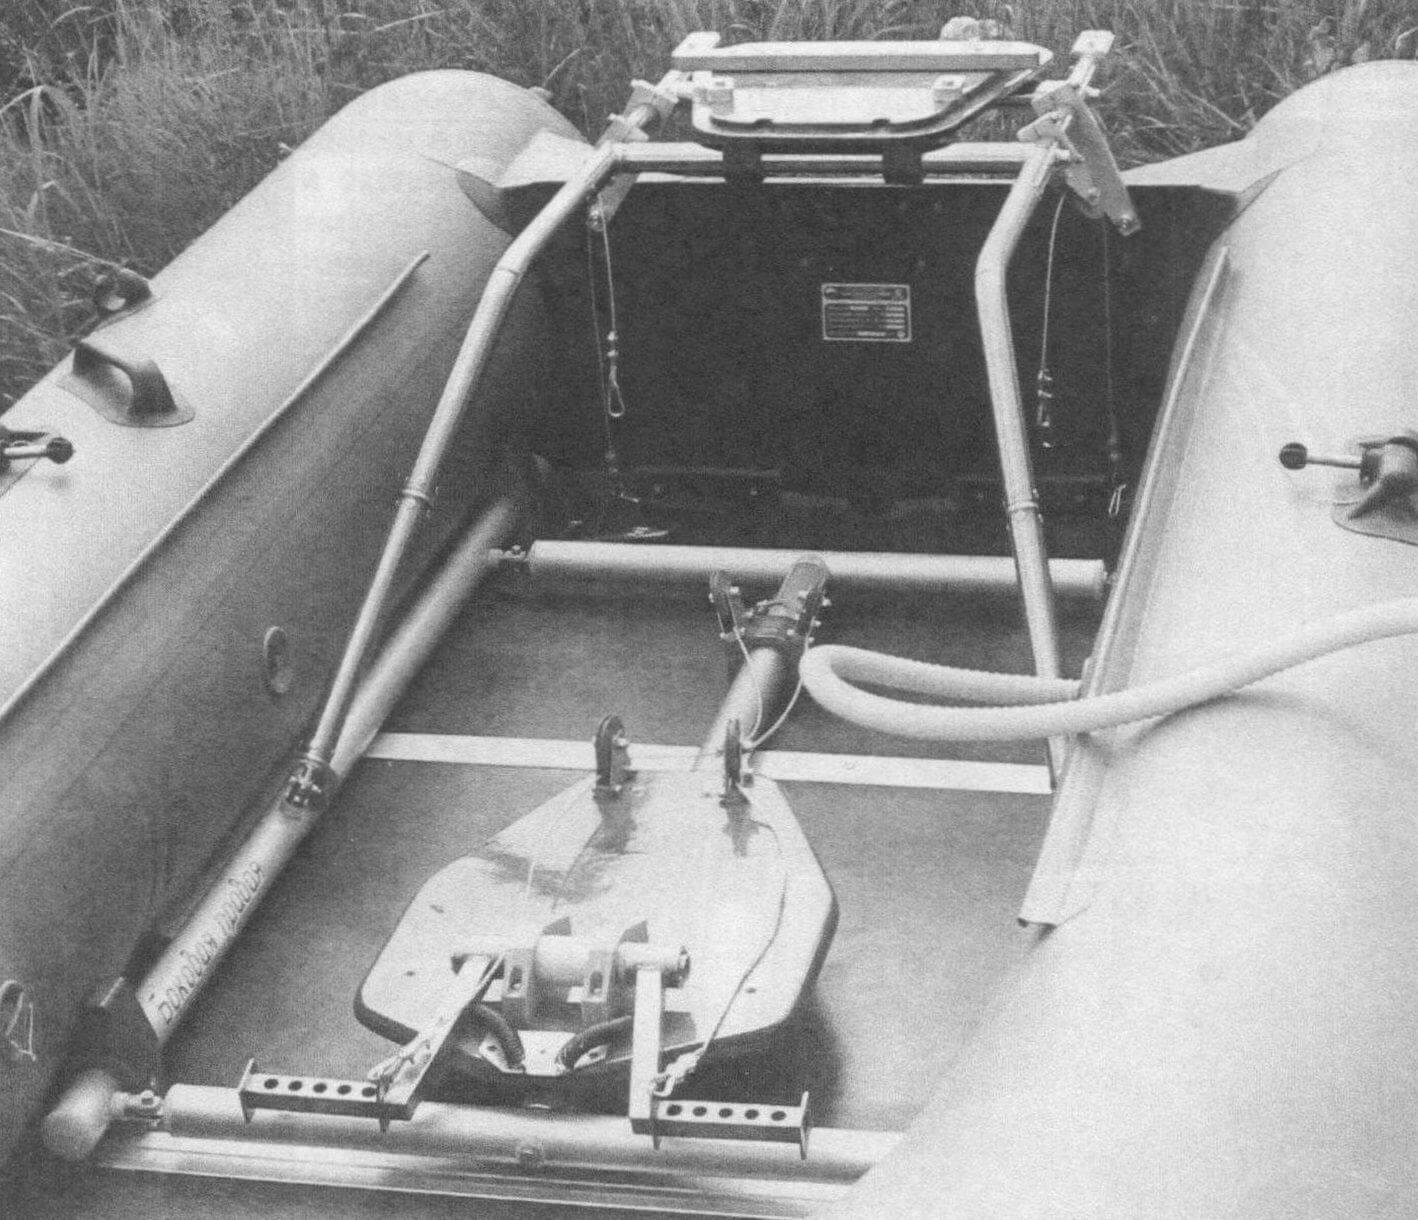 Для установки парамотора на надувную лодку понадобилось изготовить две рамы: нижнюю - из труб Д16Т, верхнюю - стальную